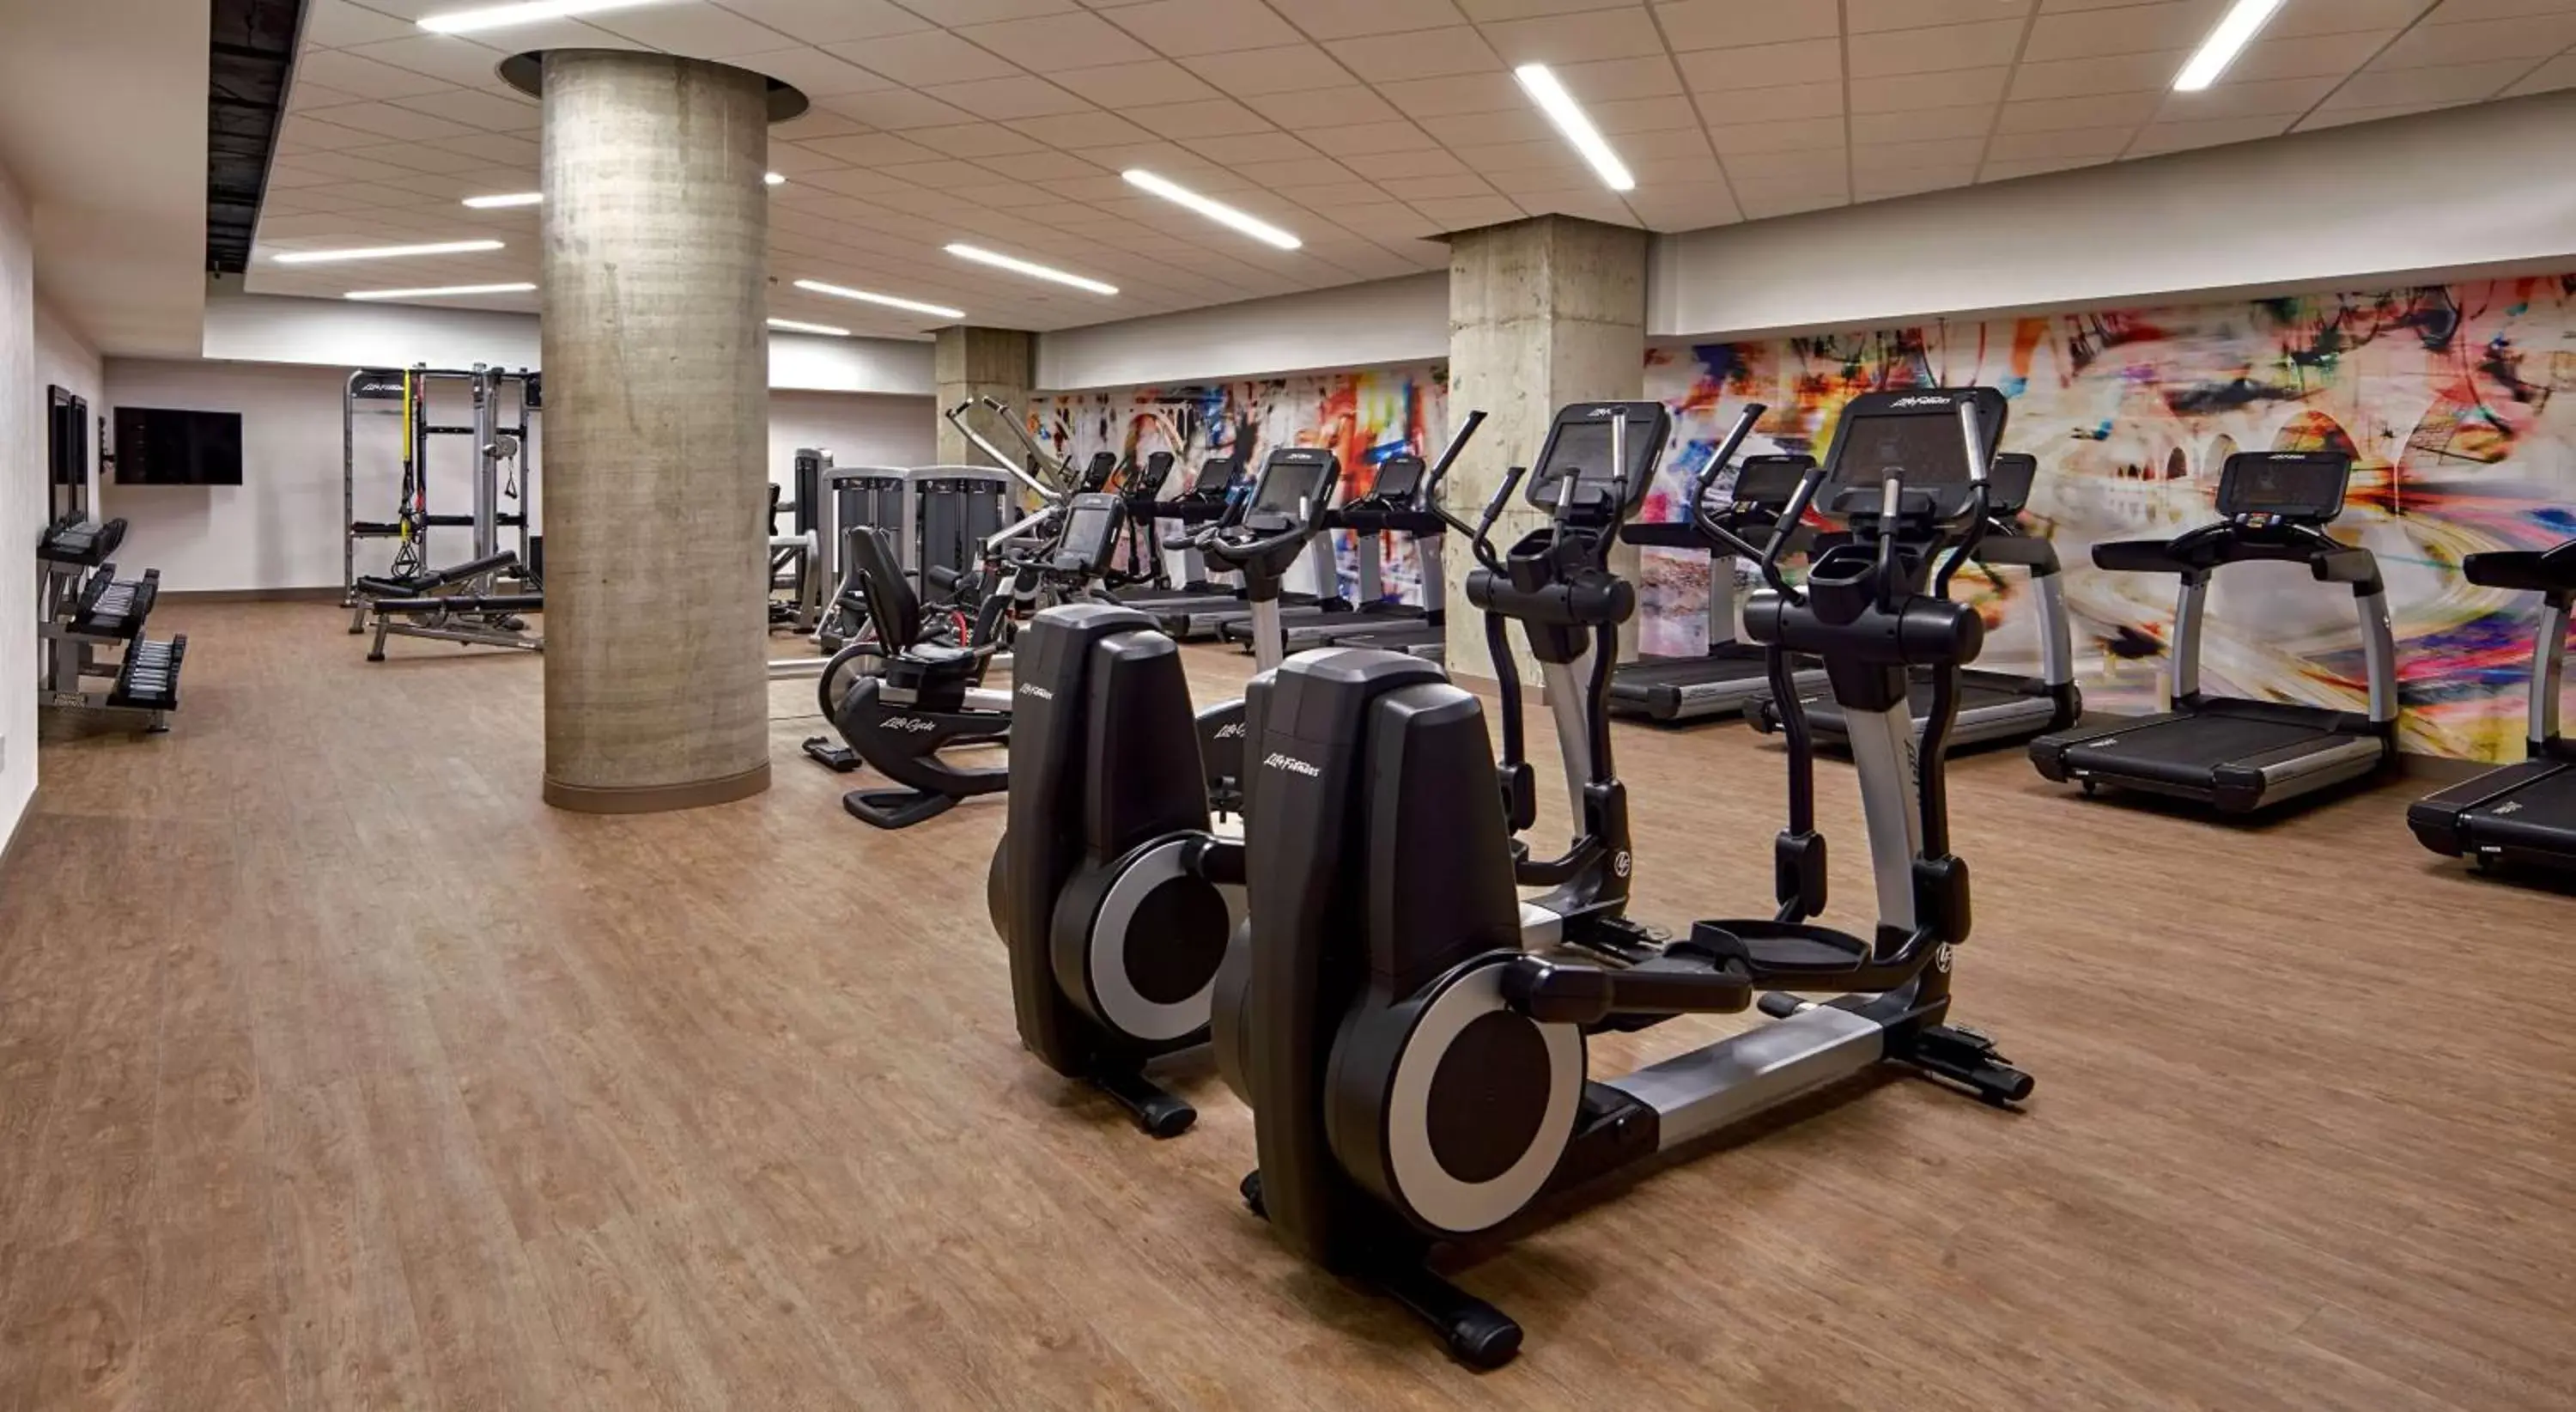 Fitness centre/facilities, Fitness Center/Facilities in Grand Hyatt Washington